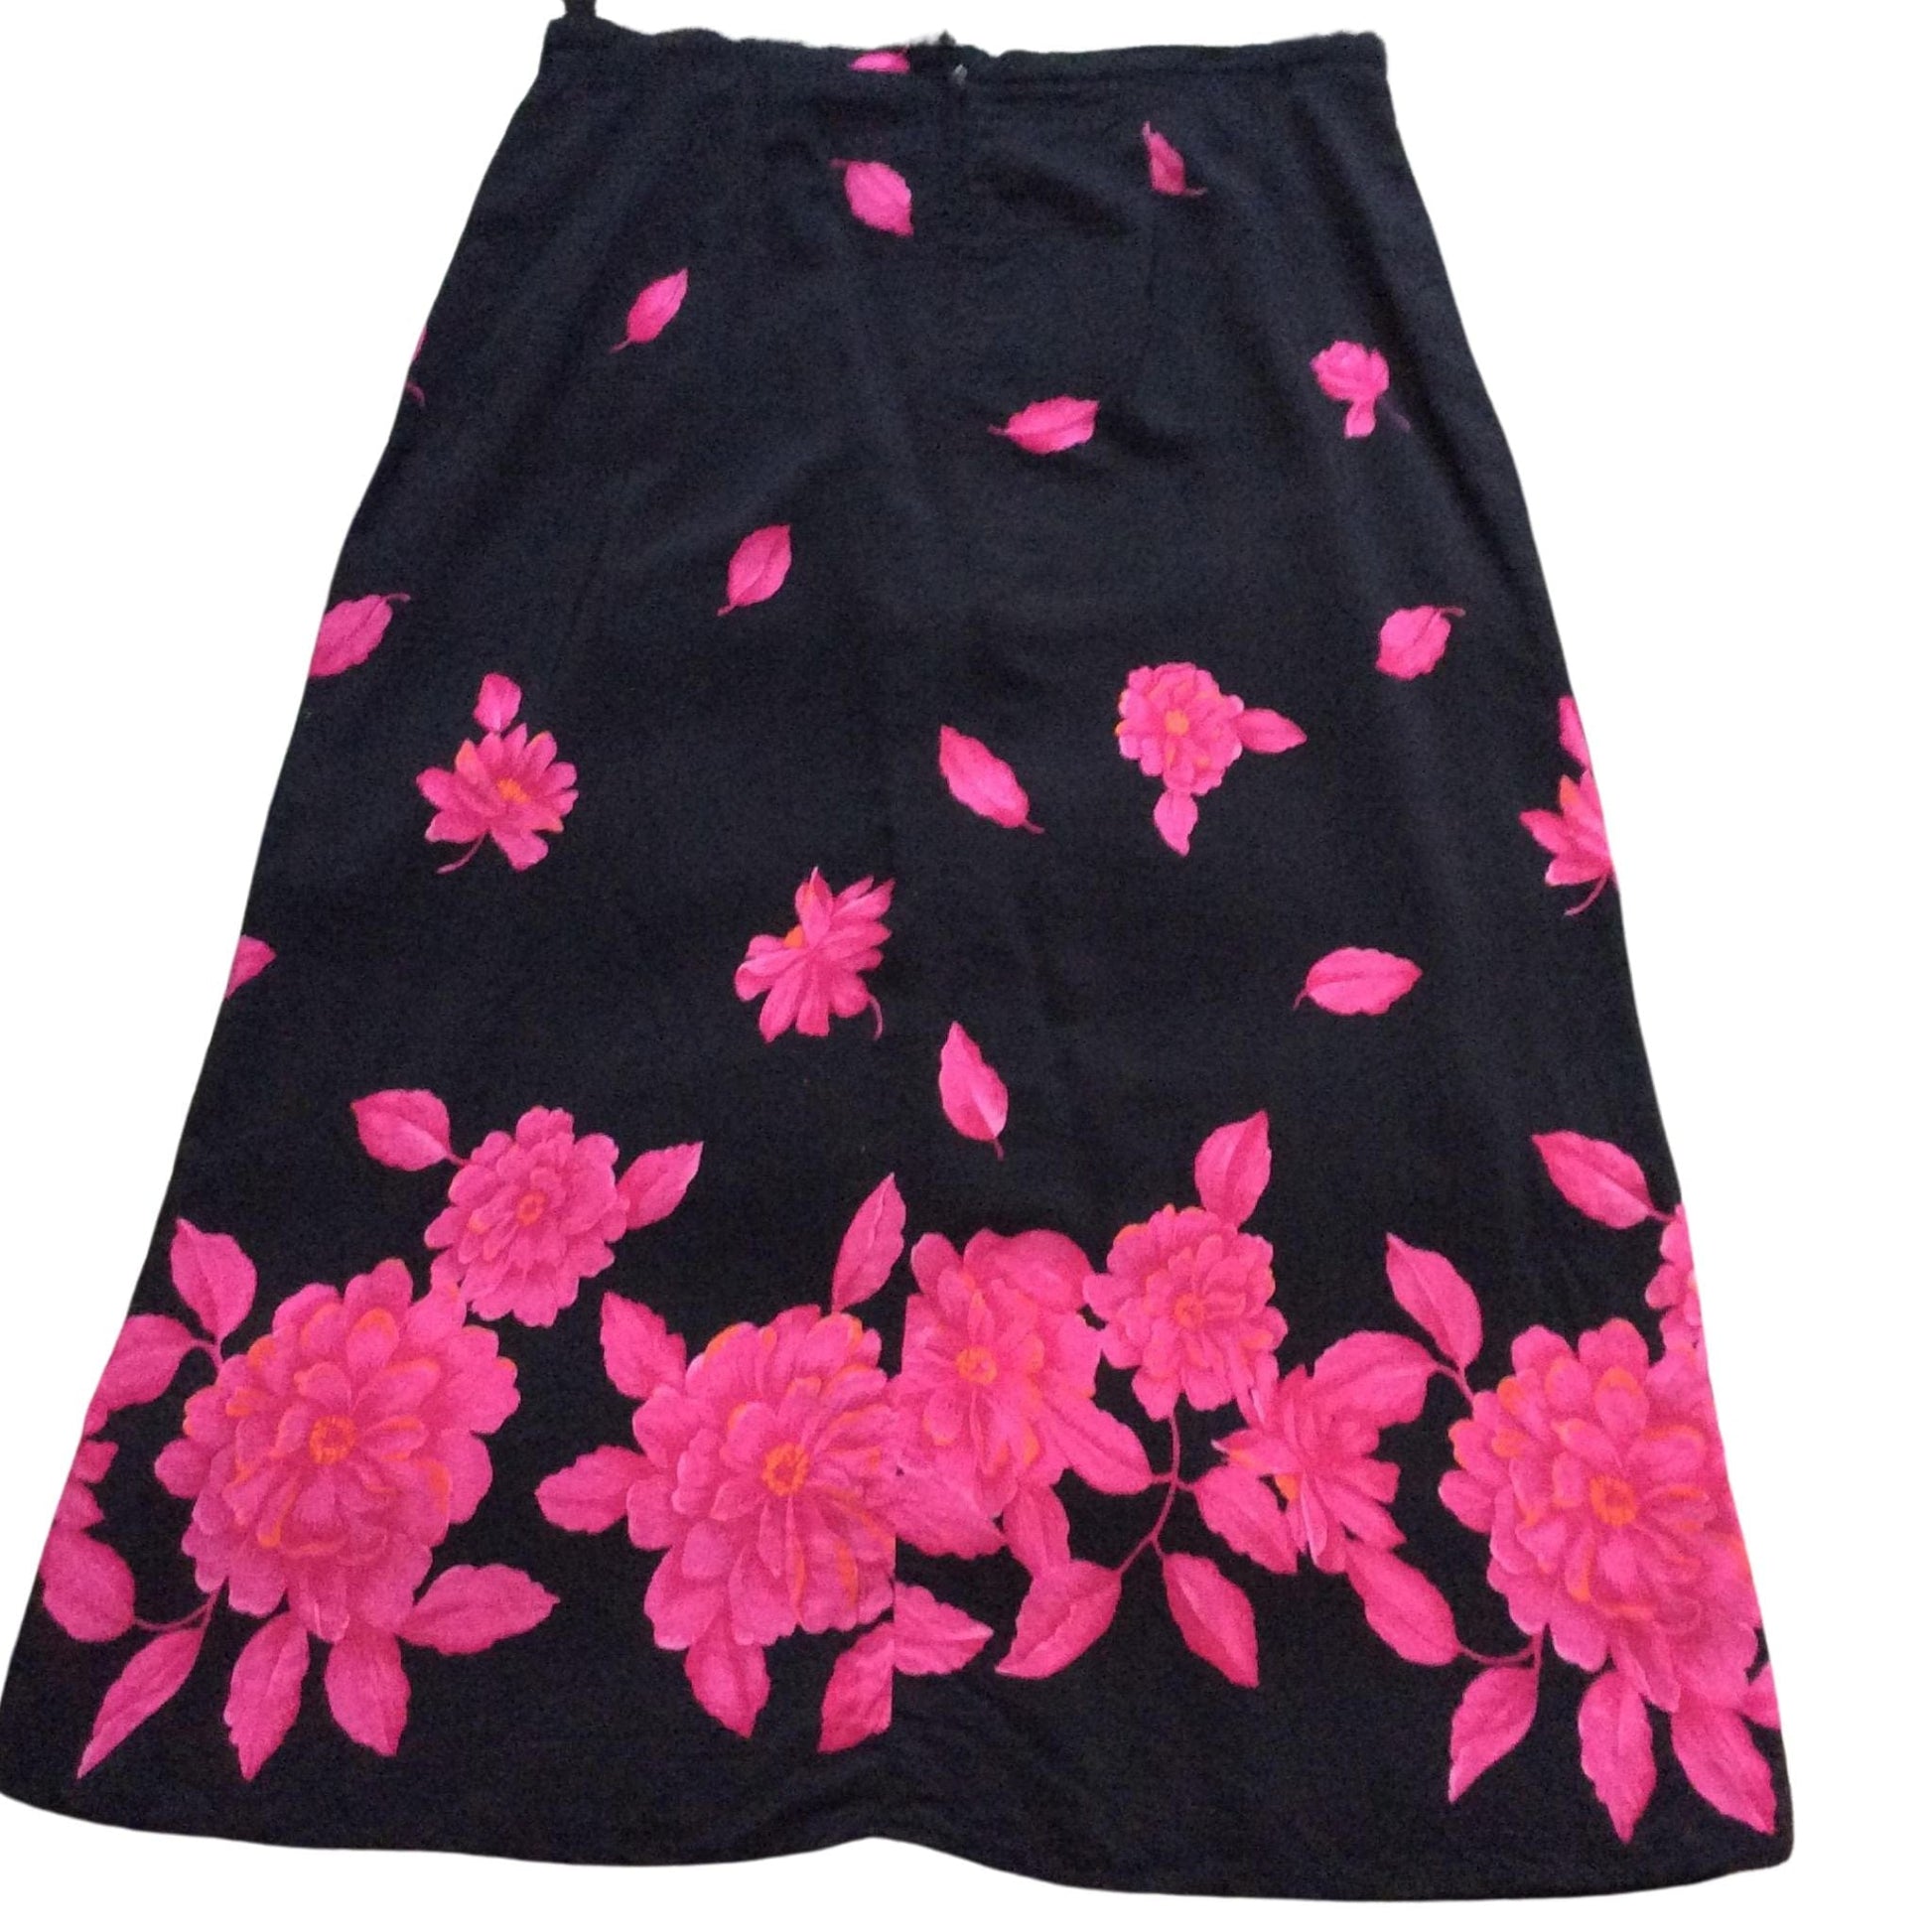 Hot Pink Floral Skirt Large / Black / Vintage 1990s